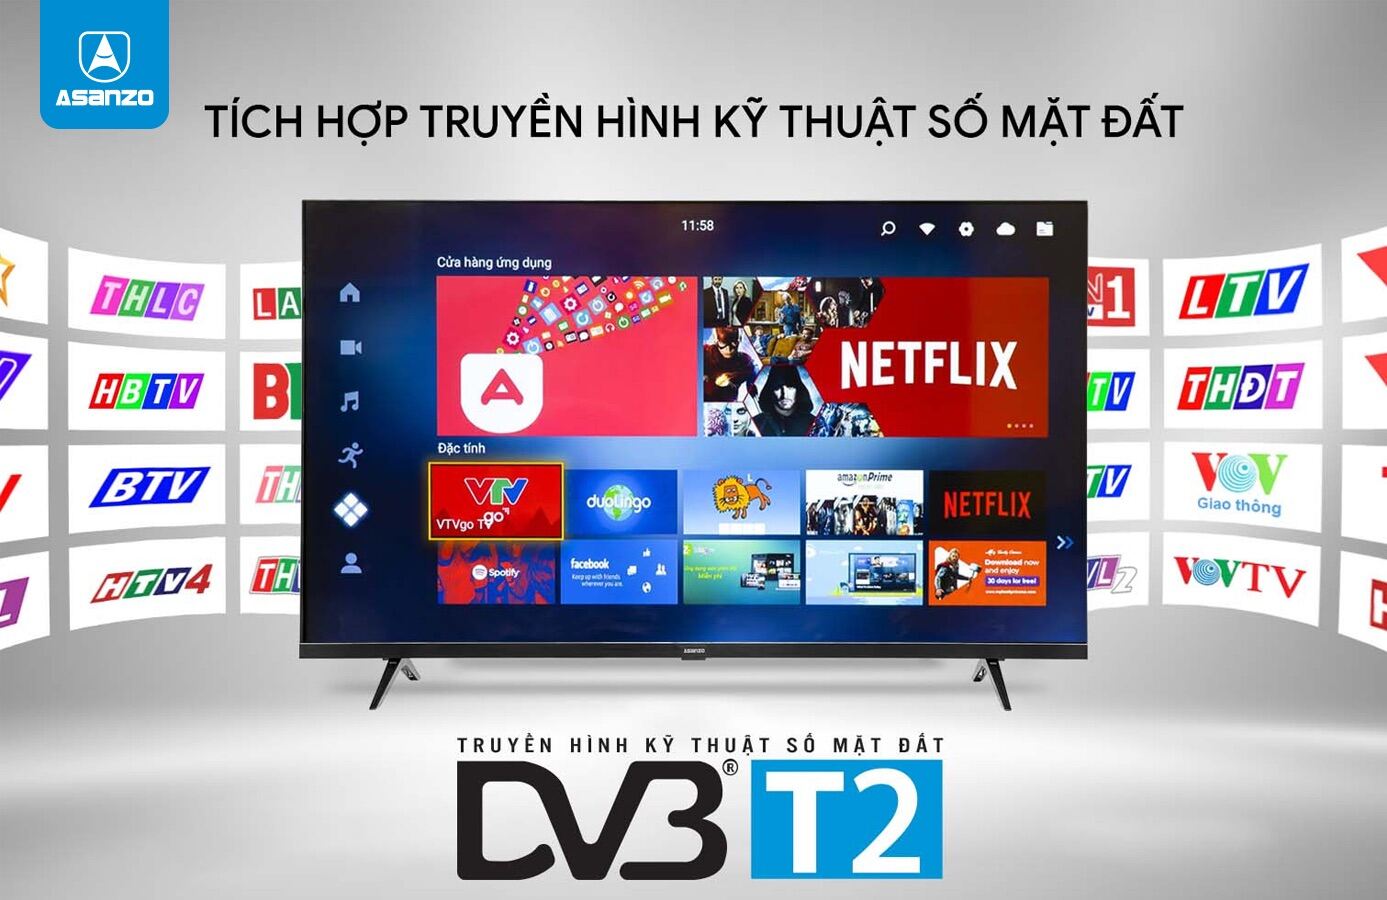 Tivi Asanzo 32 model 32T2 - Tích hợp đầu thu KTS DVB